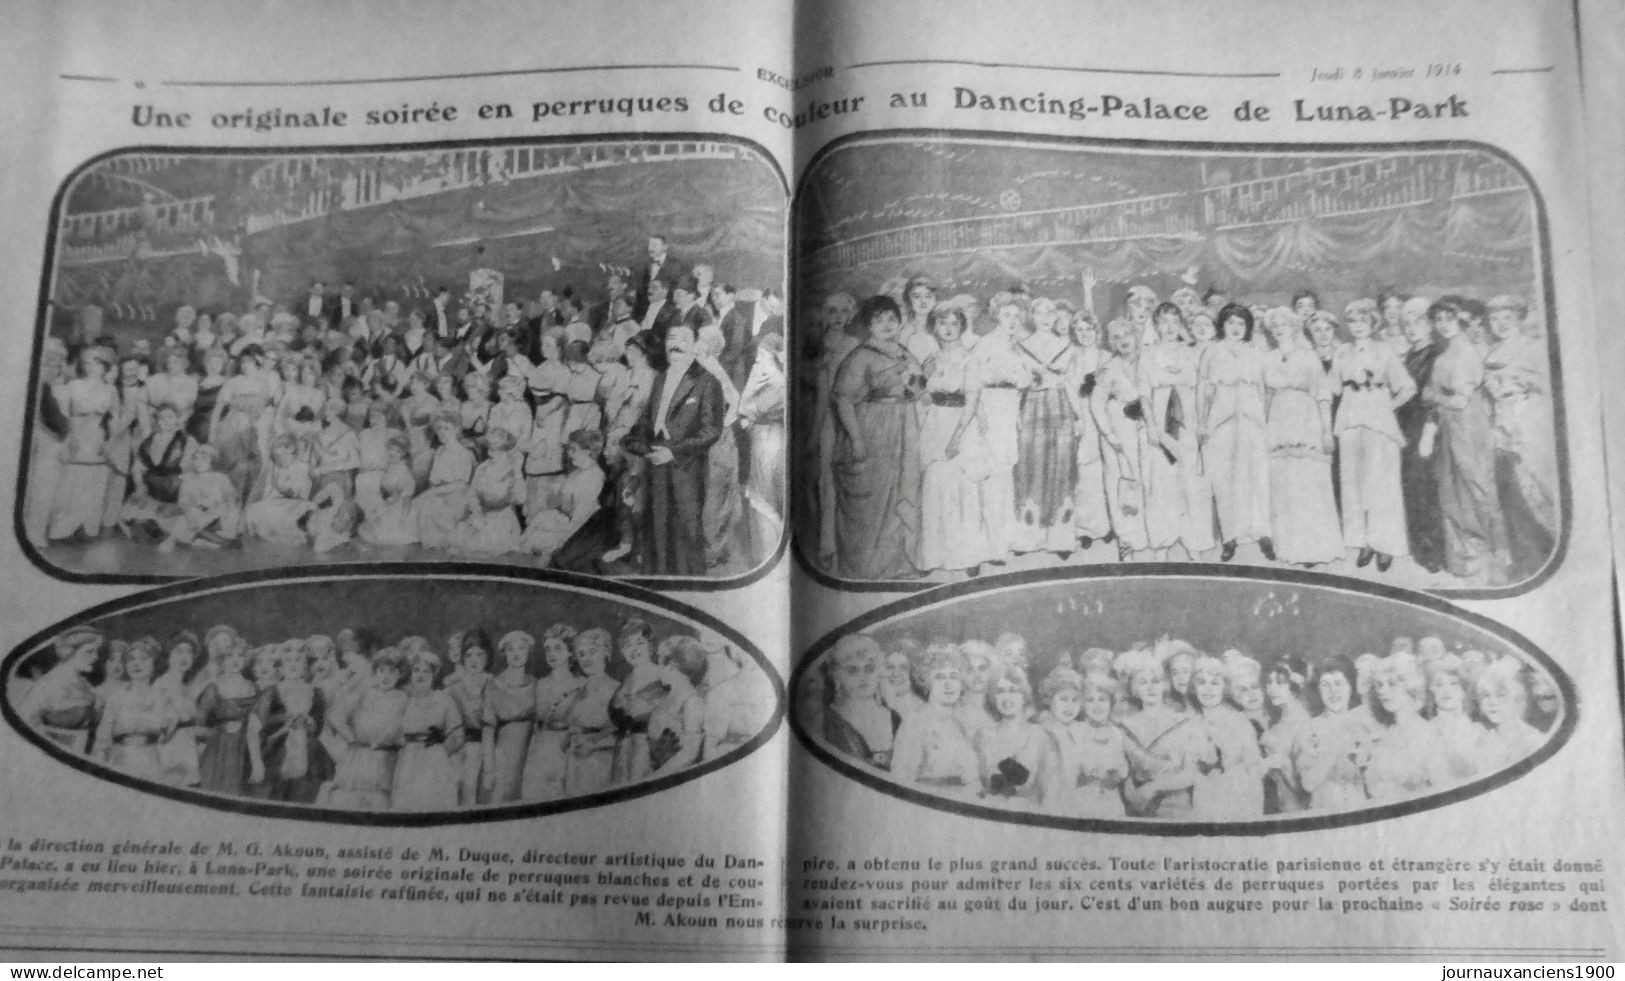 1914 EXCELSIOR ARTICLE DE PRESSE DANCING PALACE AKOUN DUQUE PERRUQUE 1 JOURNAL - Plaques De Verre